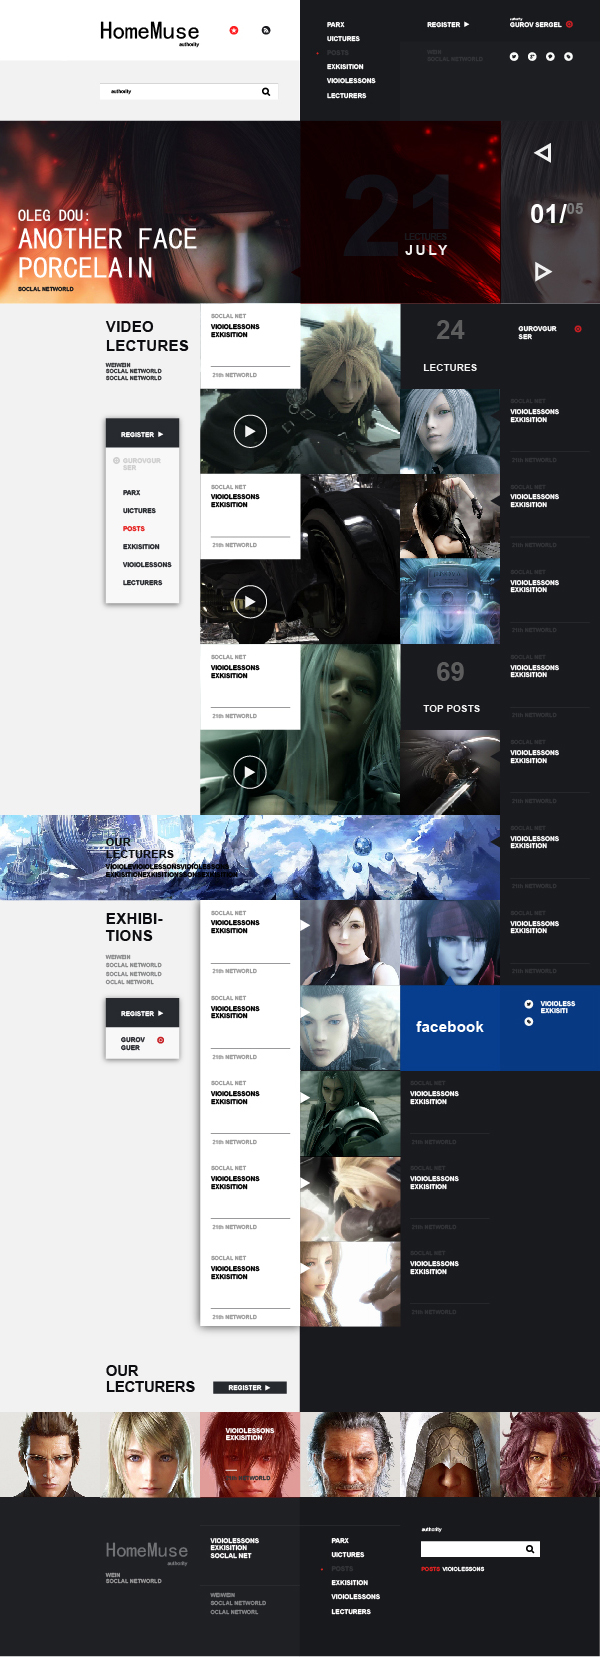 一张最终幻想主题的网页设计